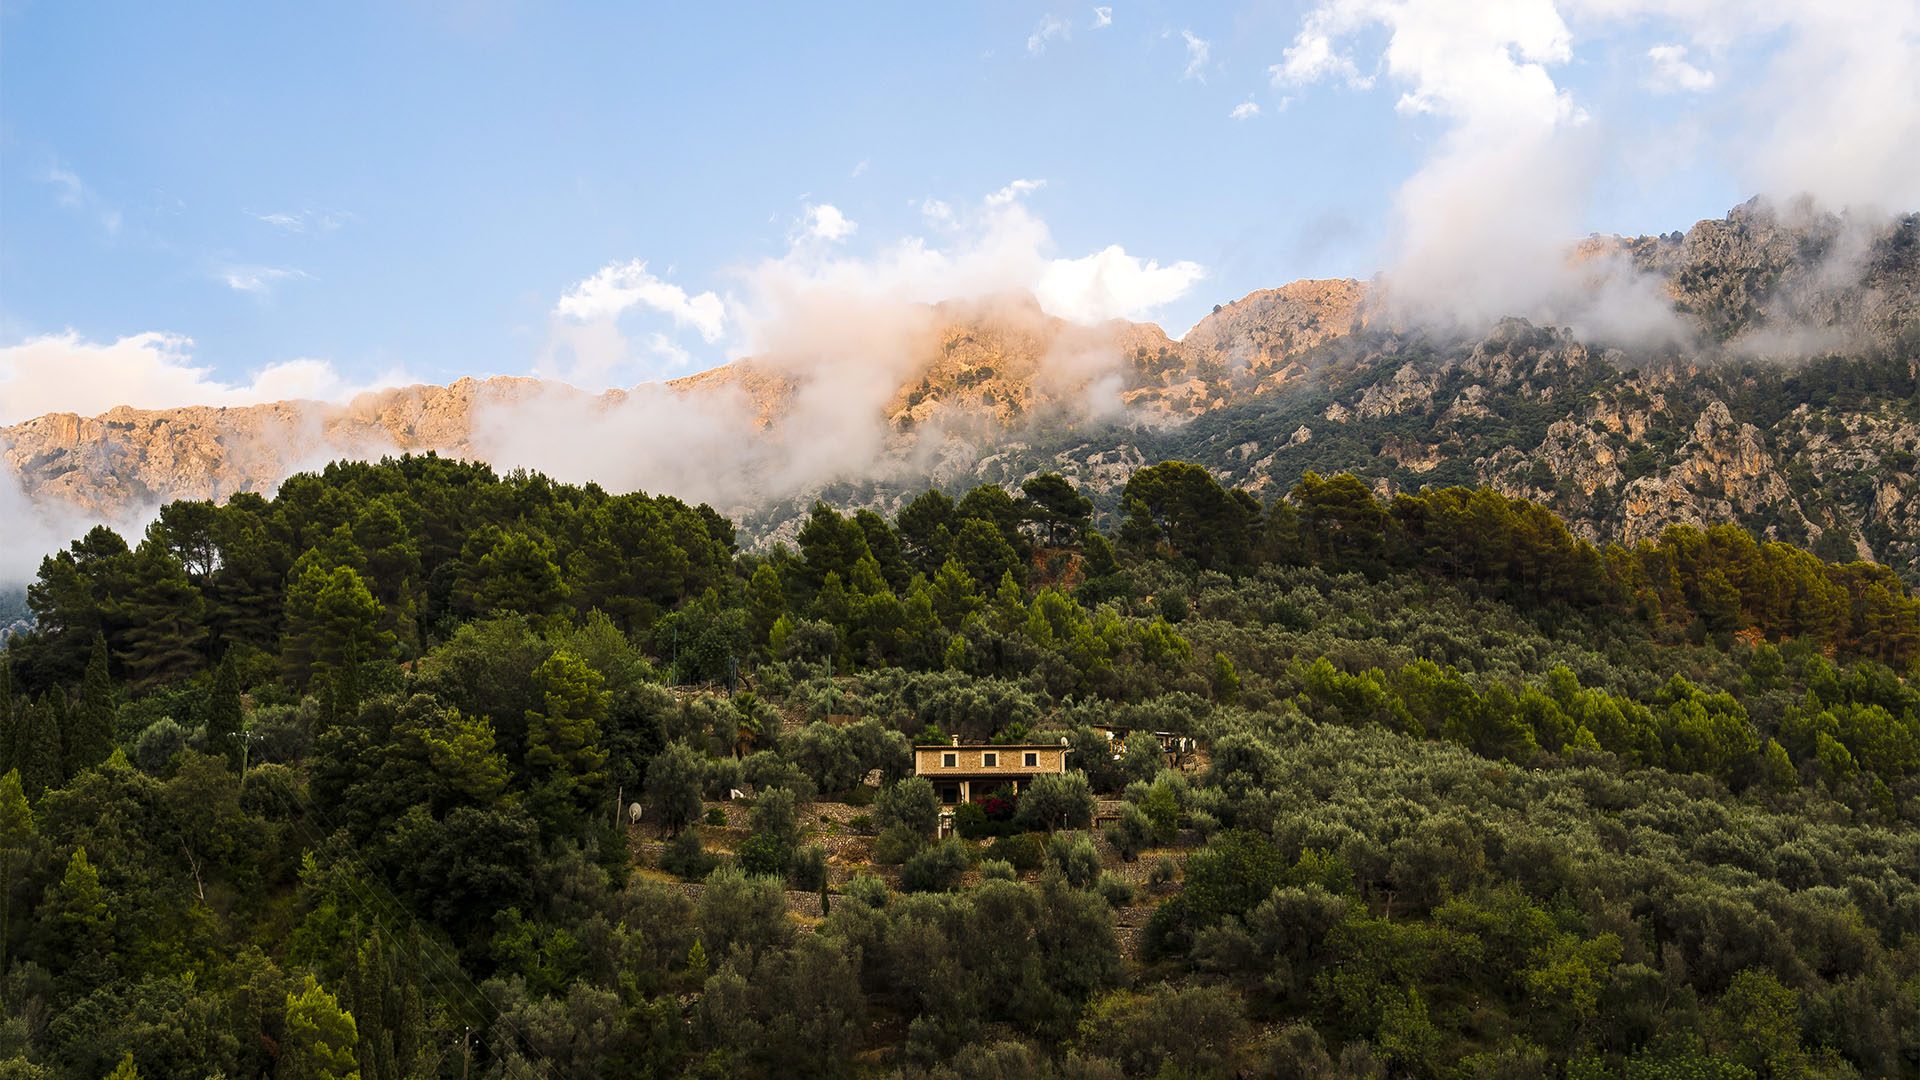 Frühmorgens in Fornalutx auf Mallorca – erfrischende Morgenkühle kündigt einen heissen Sommertag an.